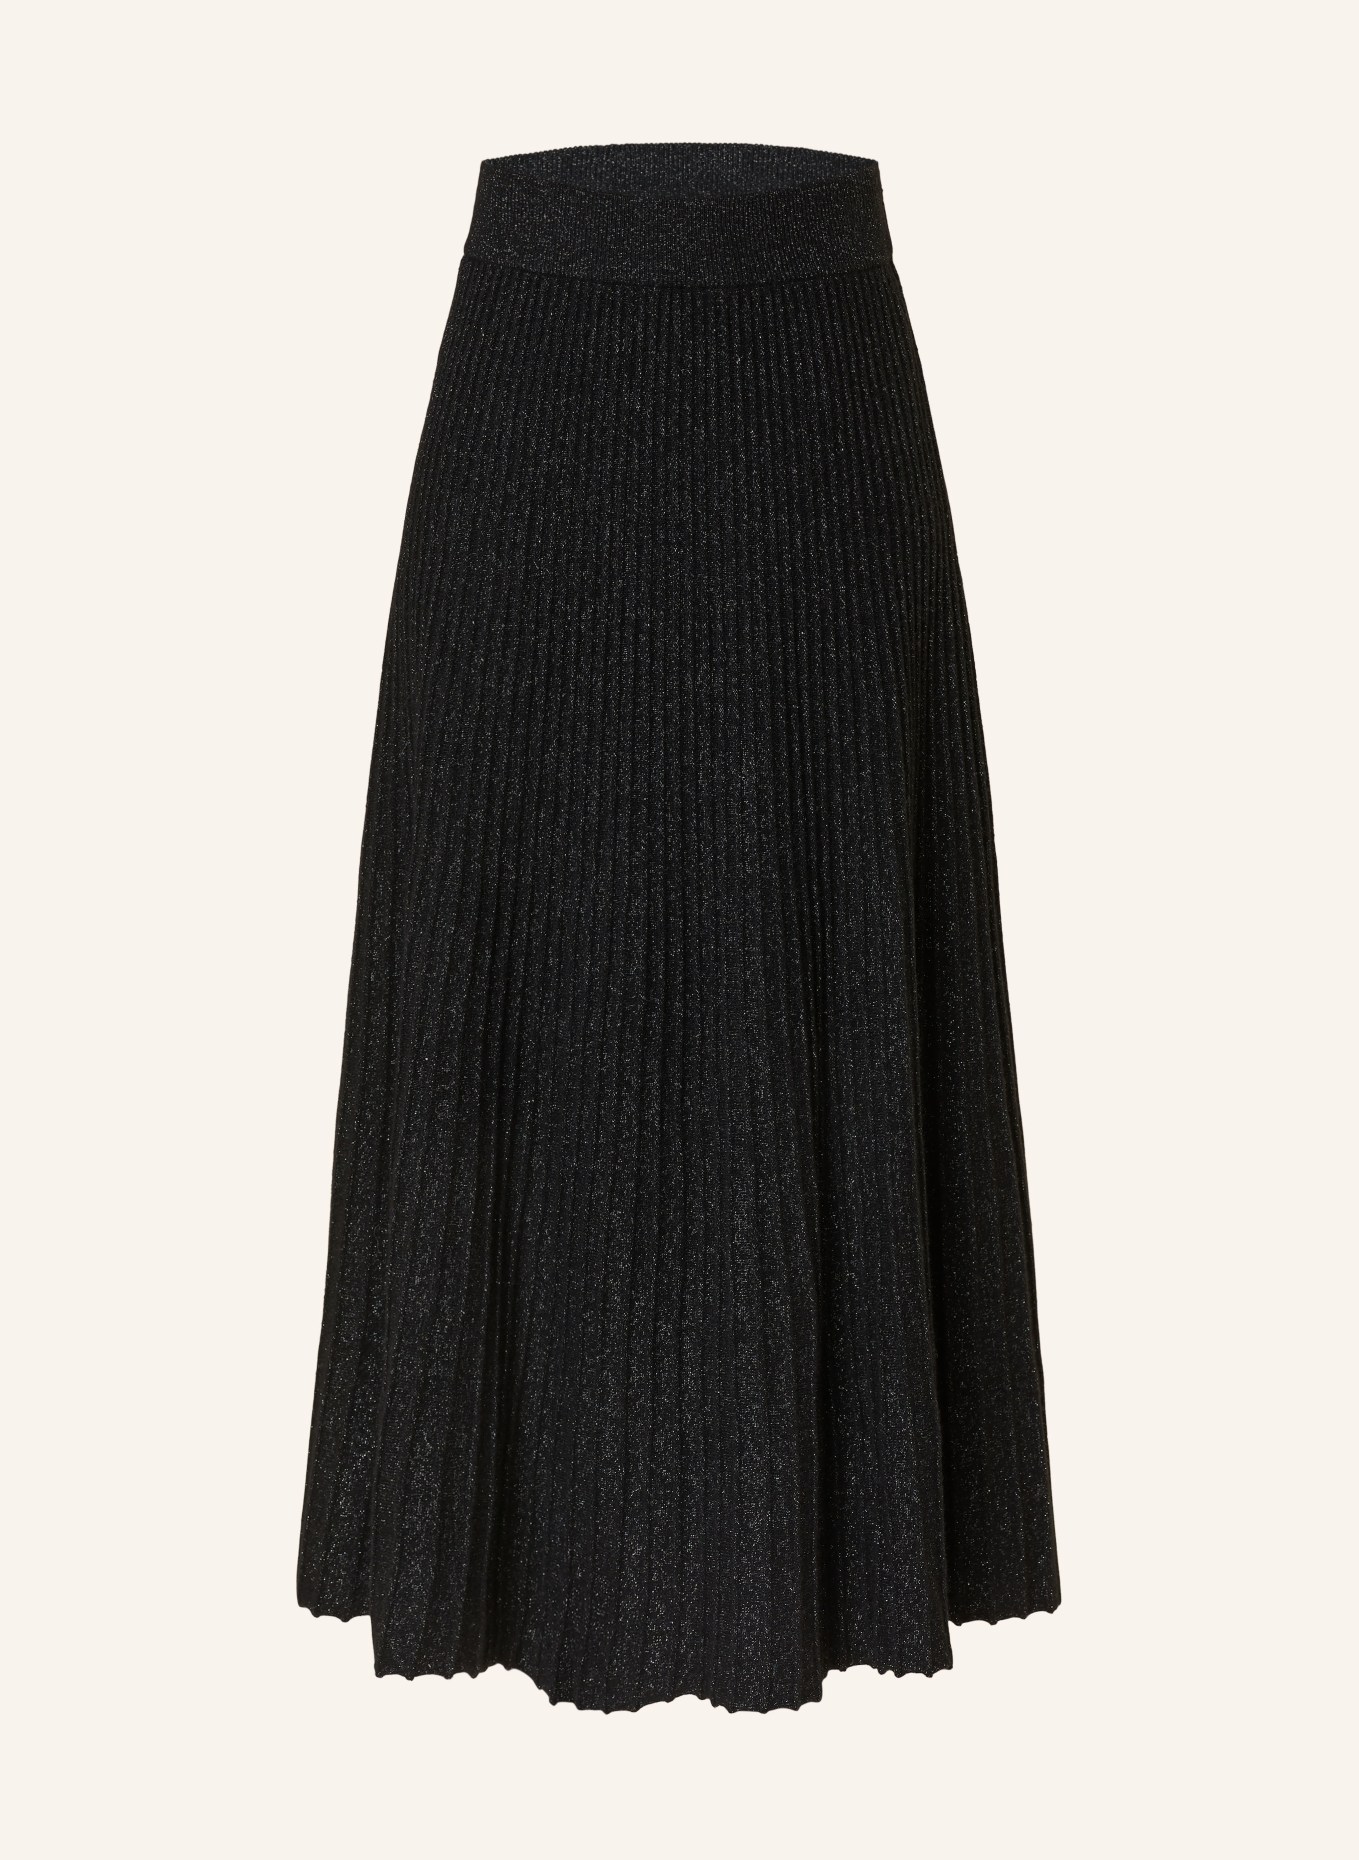 LISA YANG Strickrock aus Cashmere mit Plissees, Farbe: SCHWARZ (Bild 1)